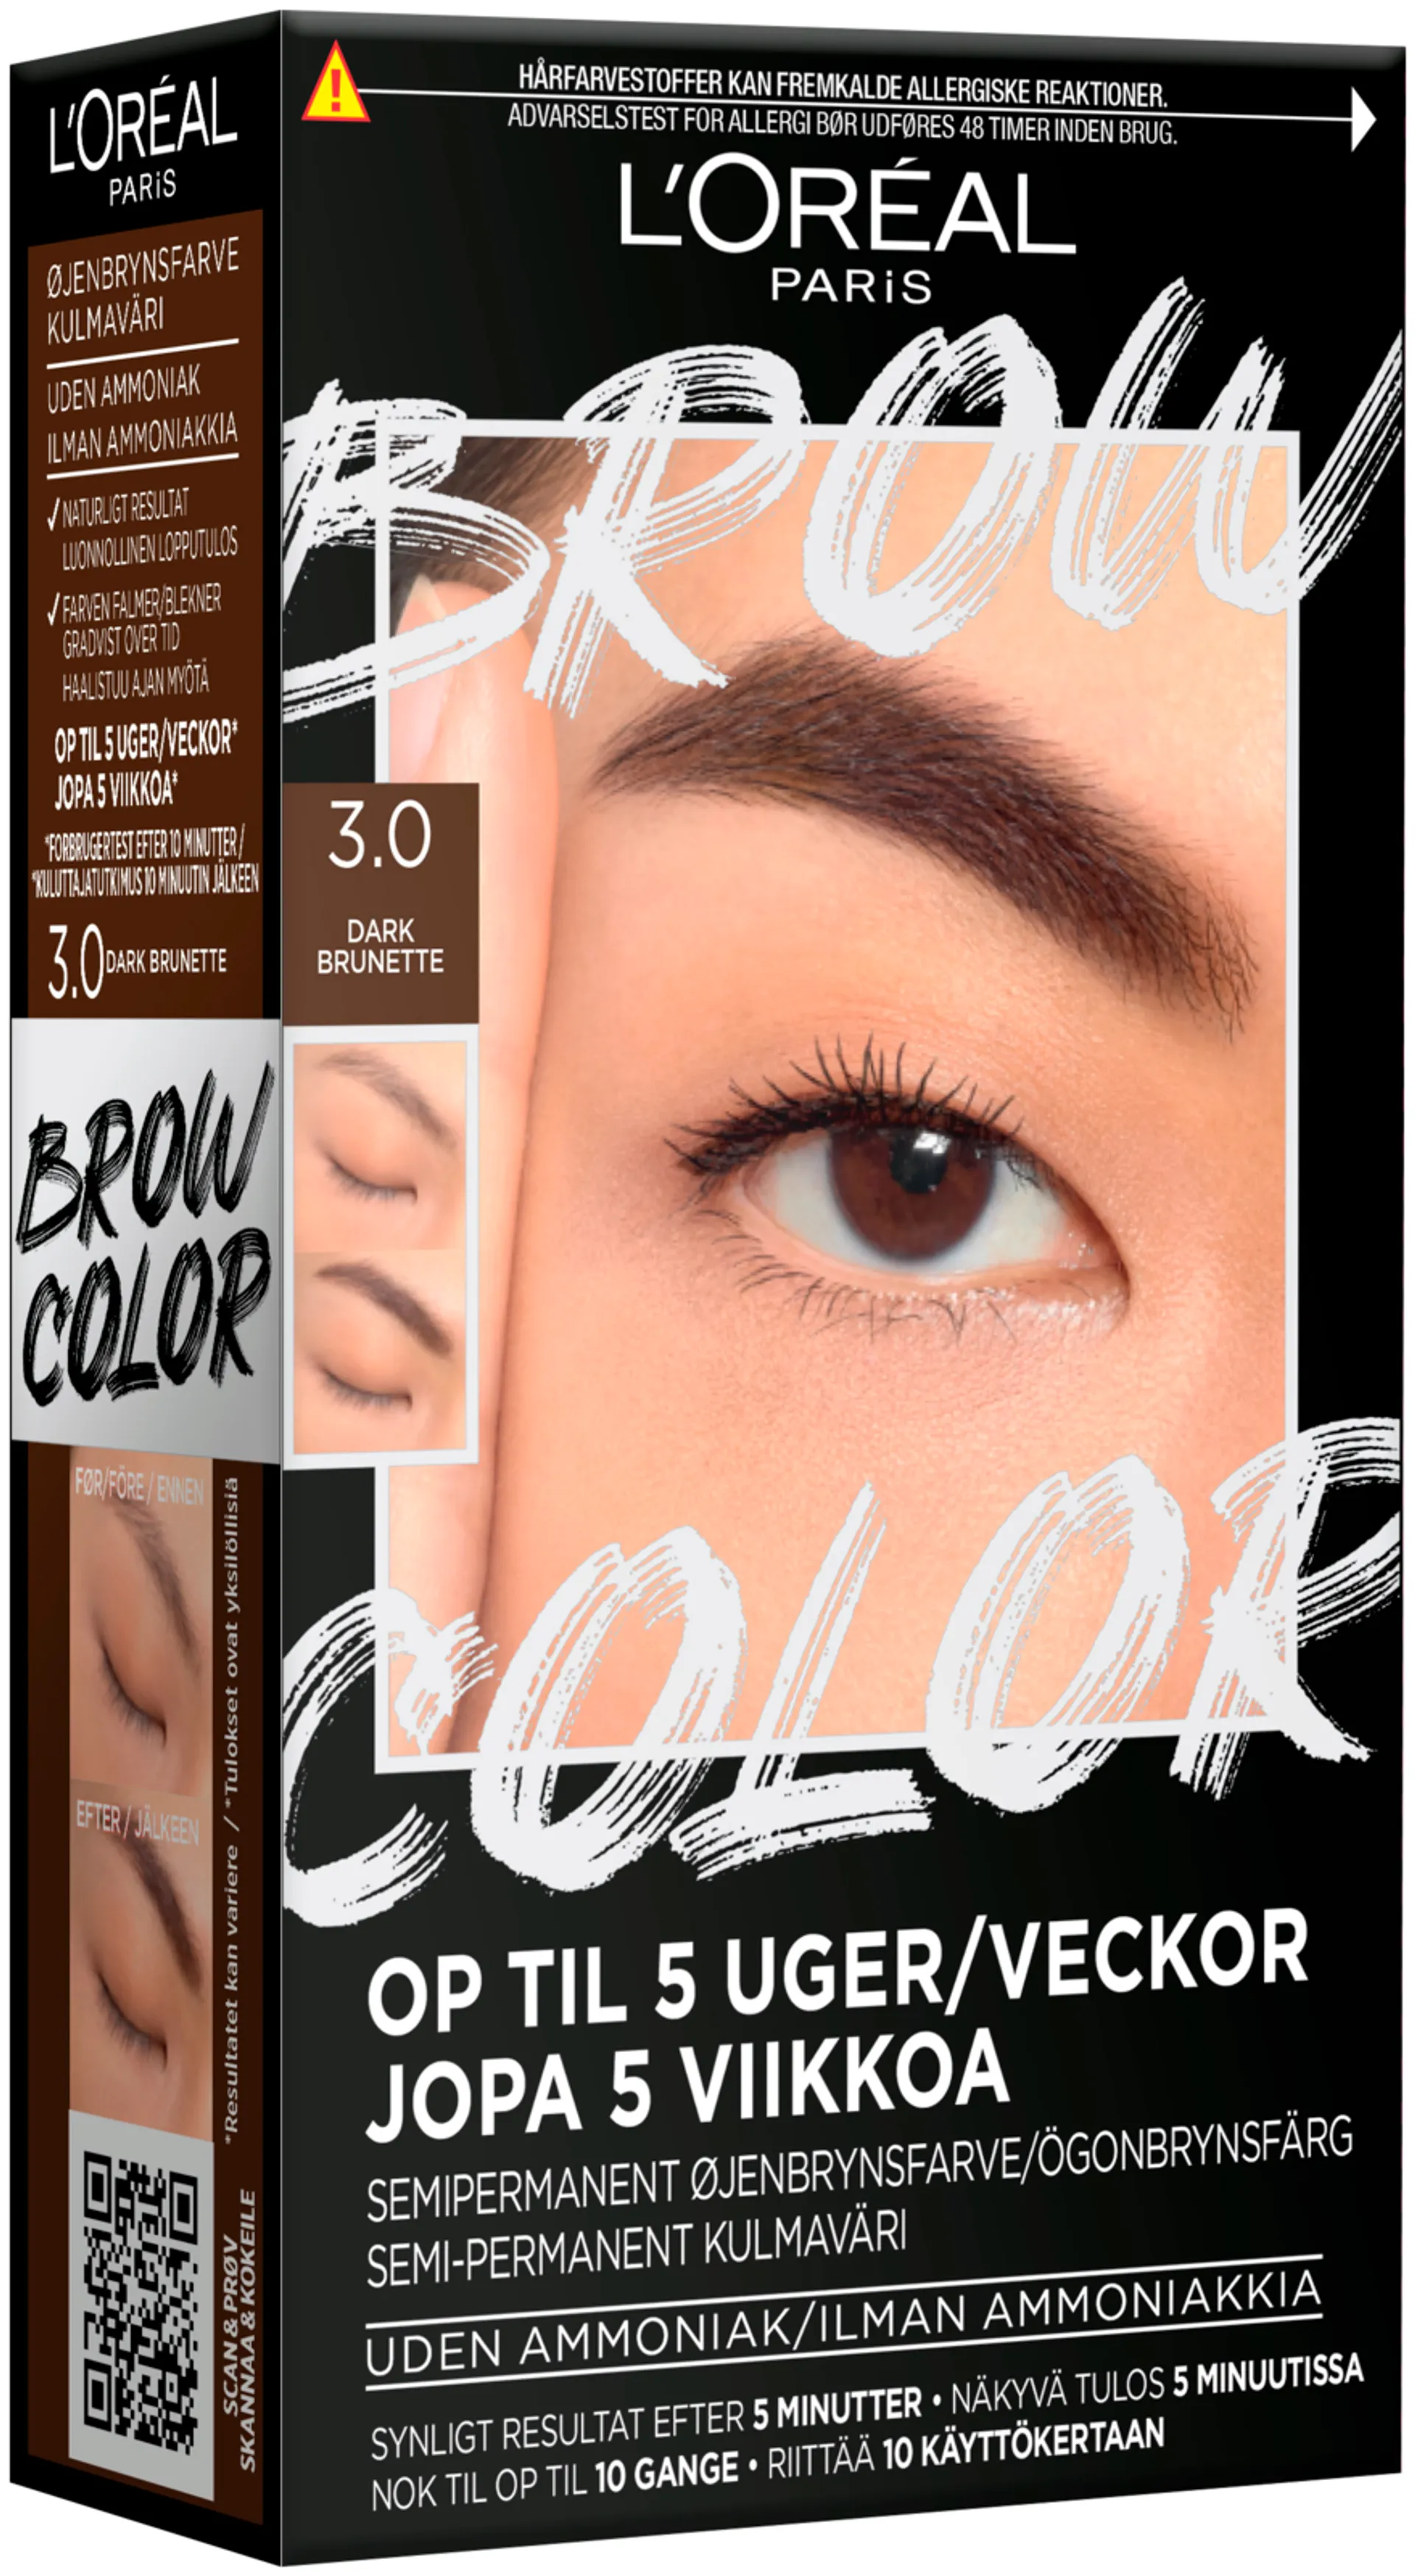 L'Oréal Paris Brow Color Kit 3.0 Dark Brunette kulmaväri 30ml - 3.0 Dark Brunette - 1